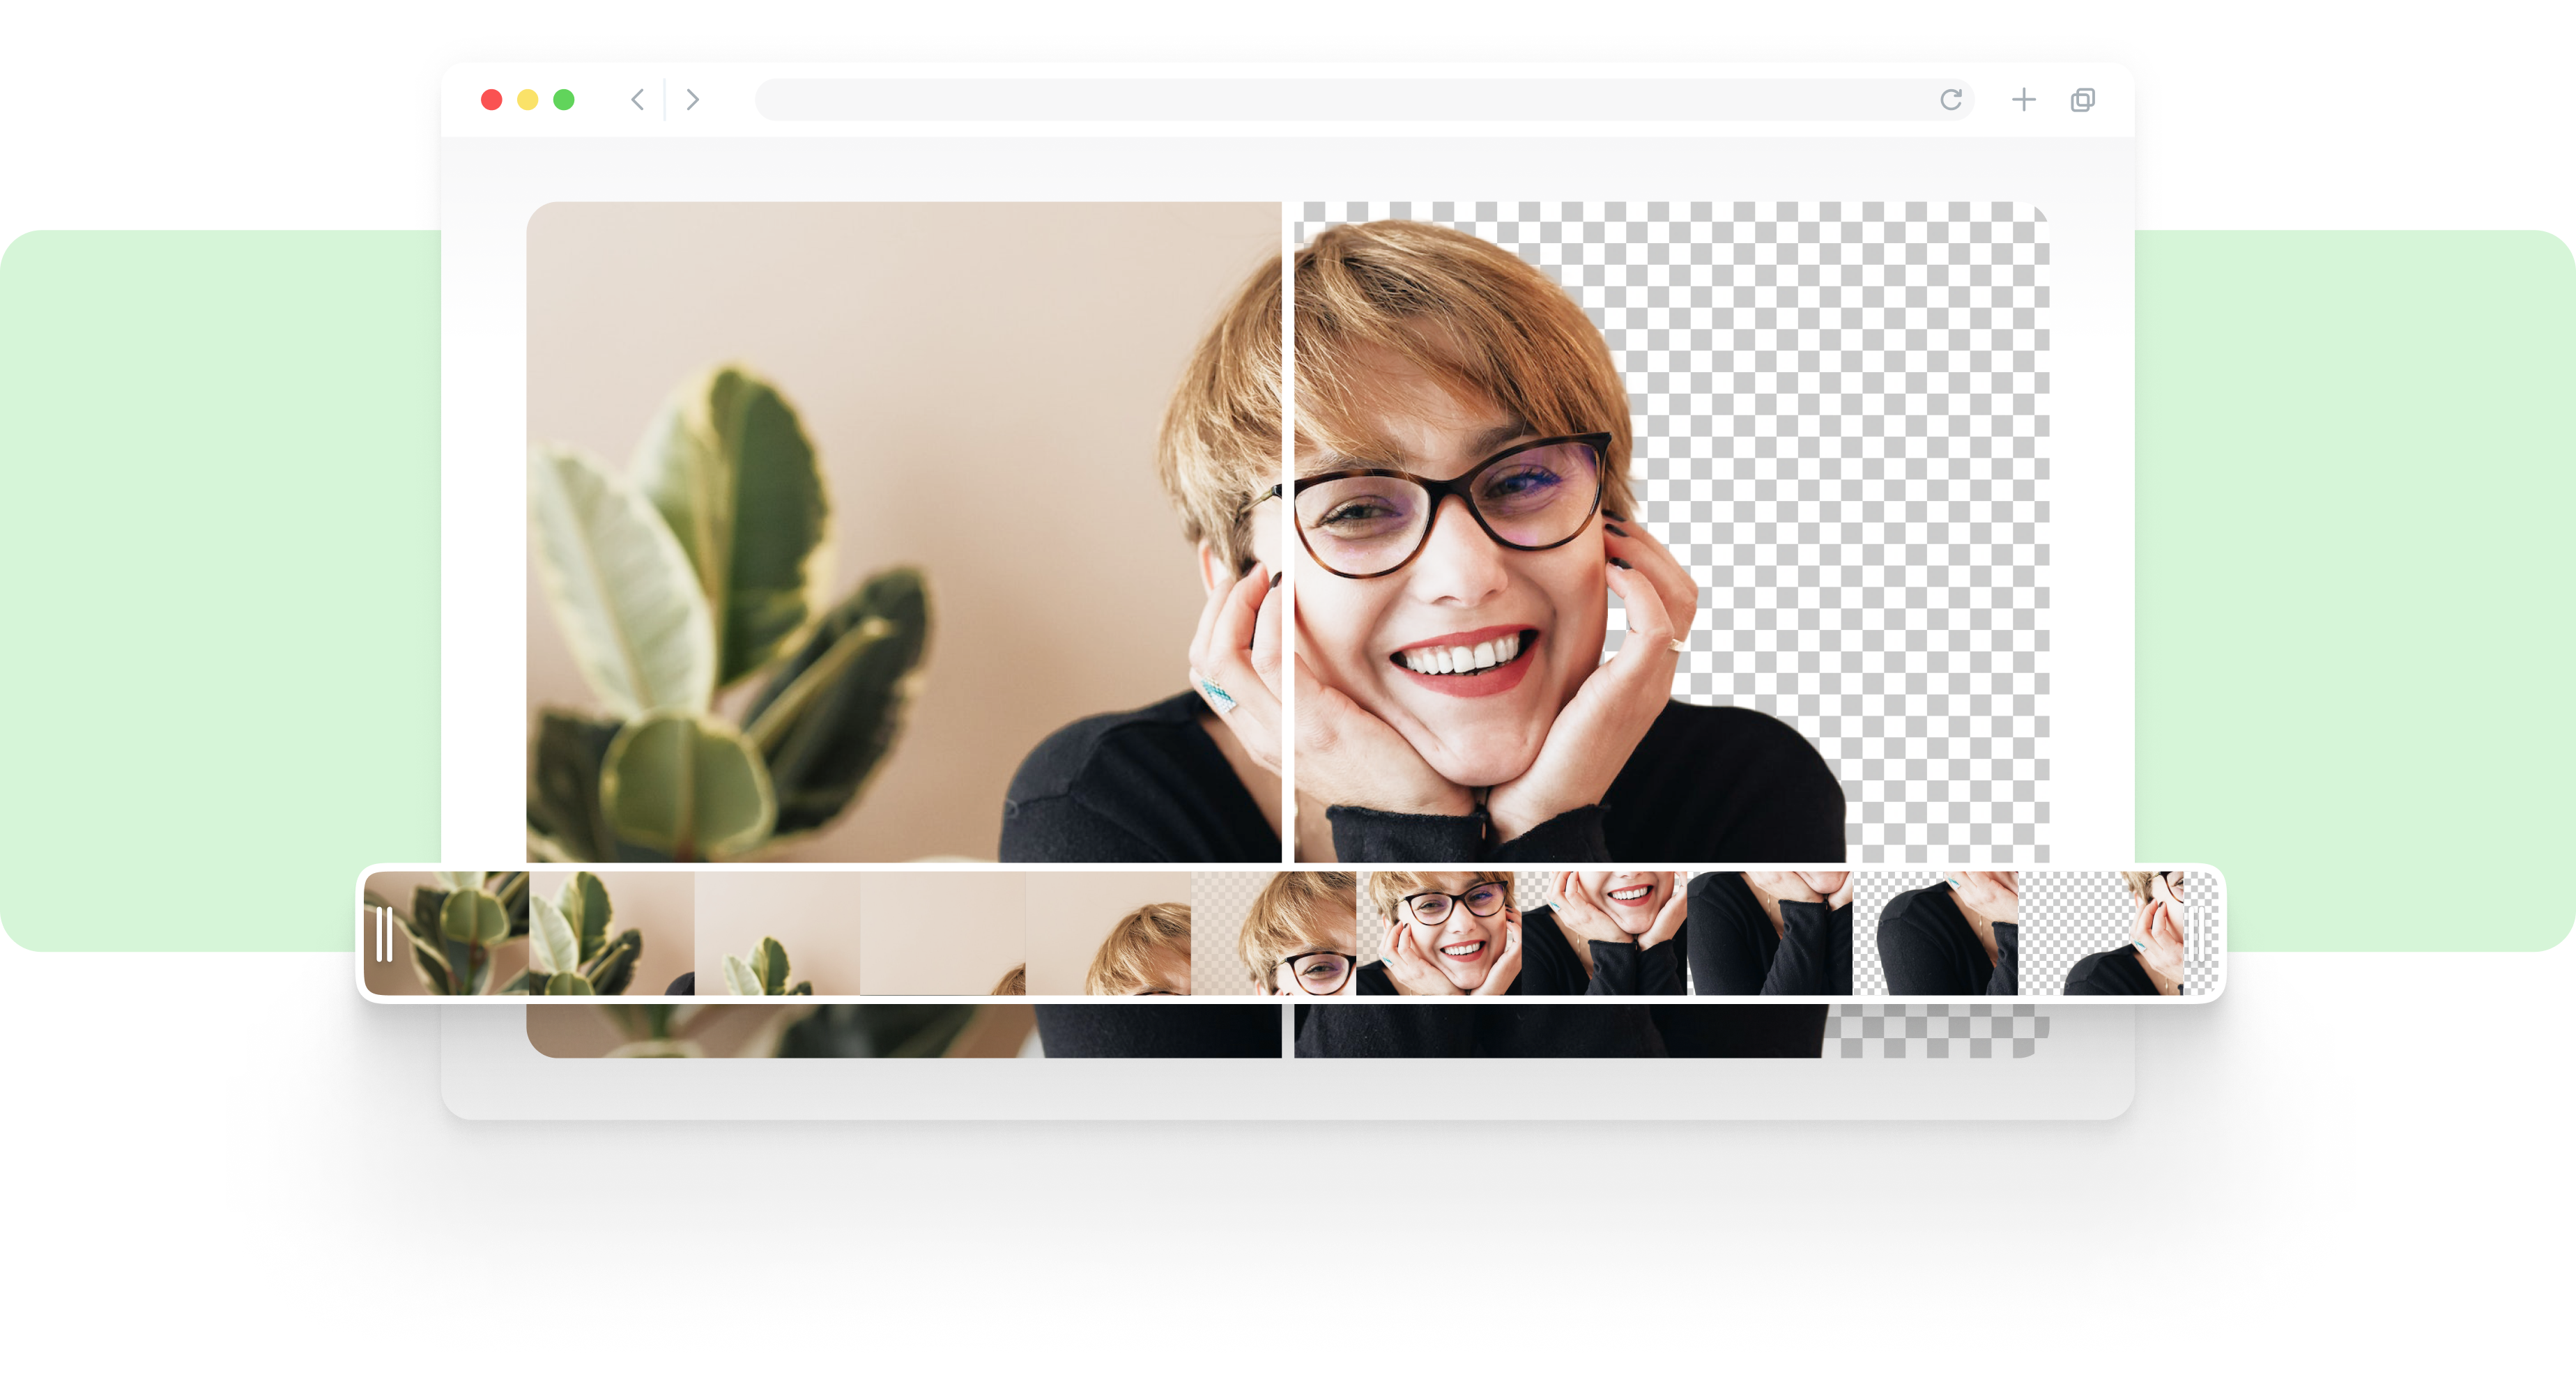 Bạn có muốn tạo nên những video chuyên nghiệp mà không cần sử dụng vật liệu phông xanh? Vậy thì đến với VEED và trải nghiệm công cụ Webcam Background Remover ngay thôi! Tự động loại bỏ nền phông và tập trung vào nội dung chính của video bạn.